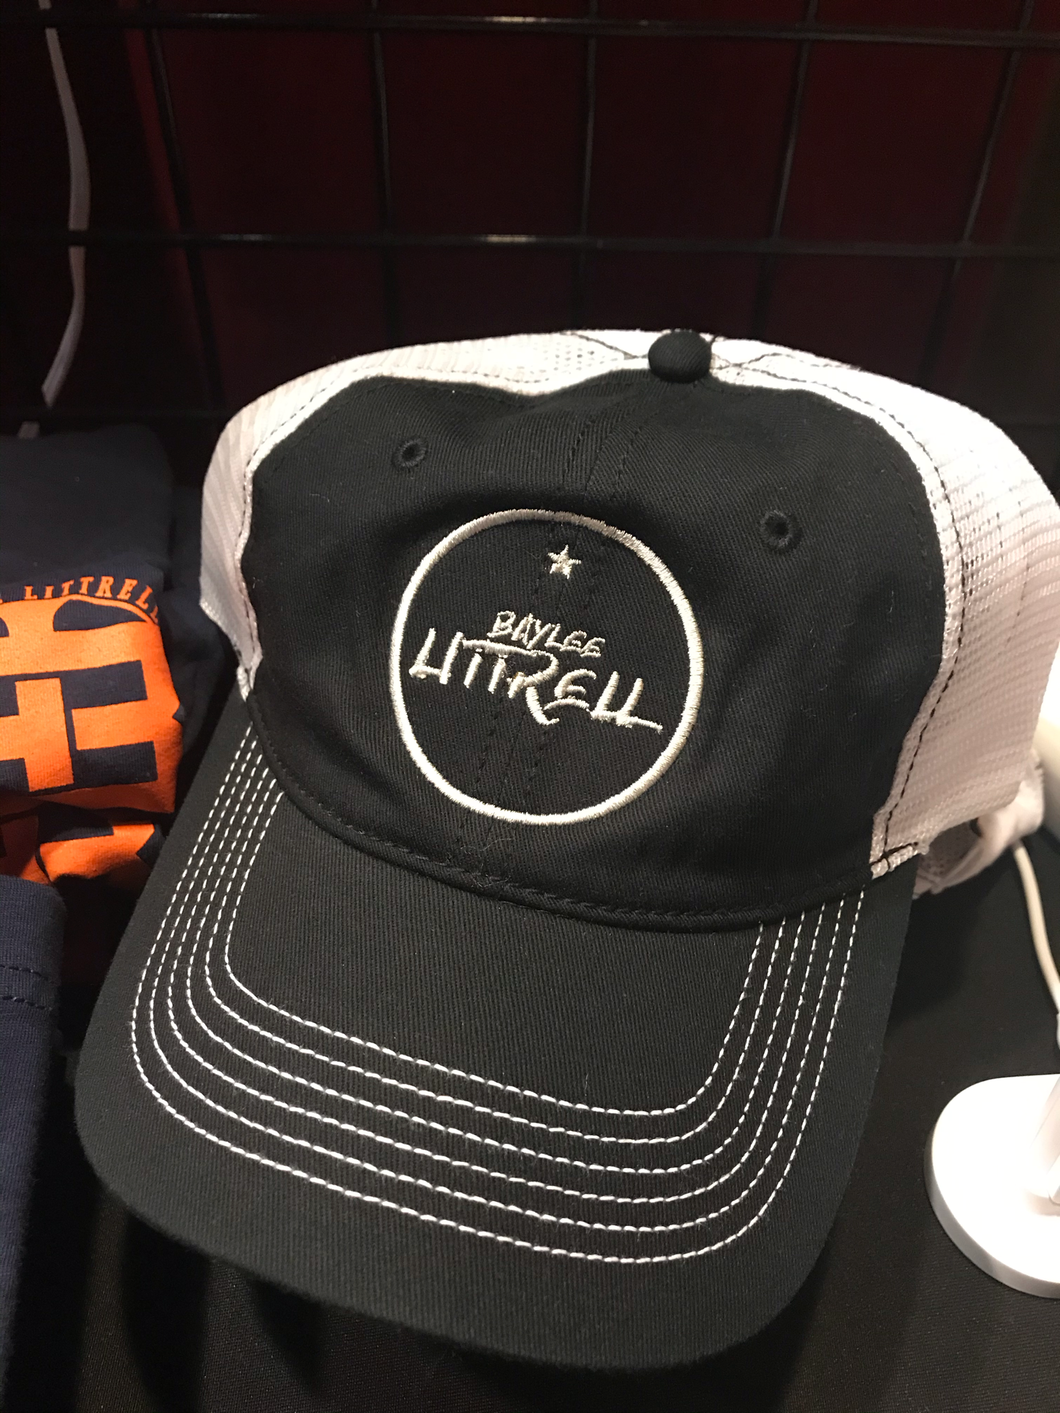 Baylee Littrell star hat